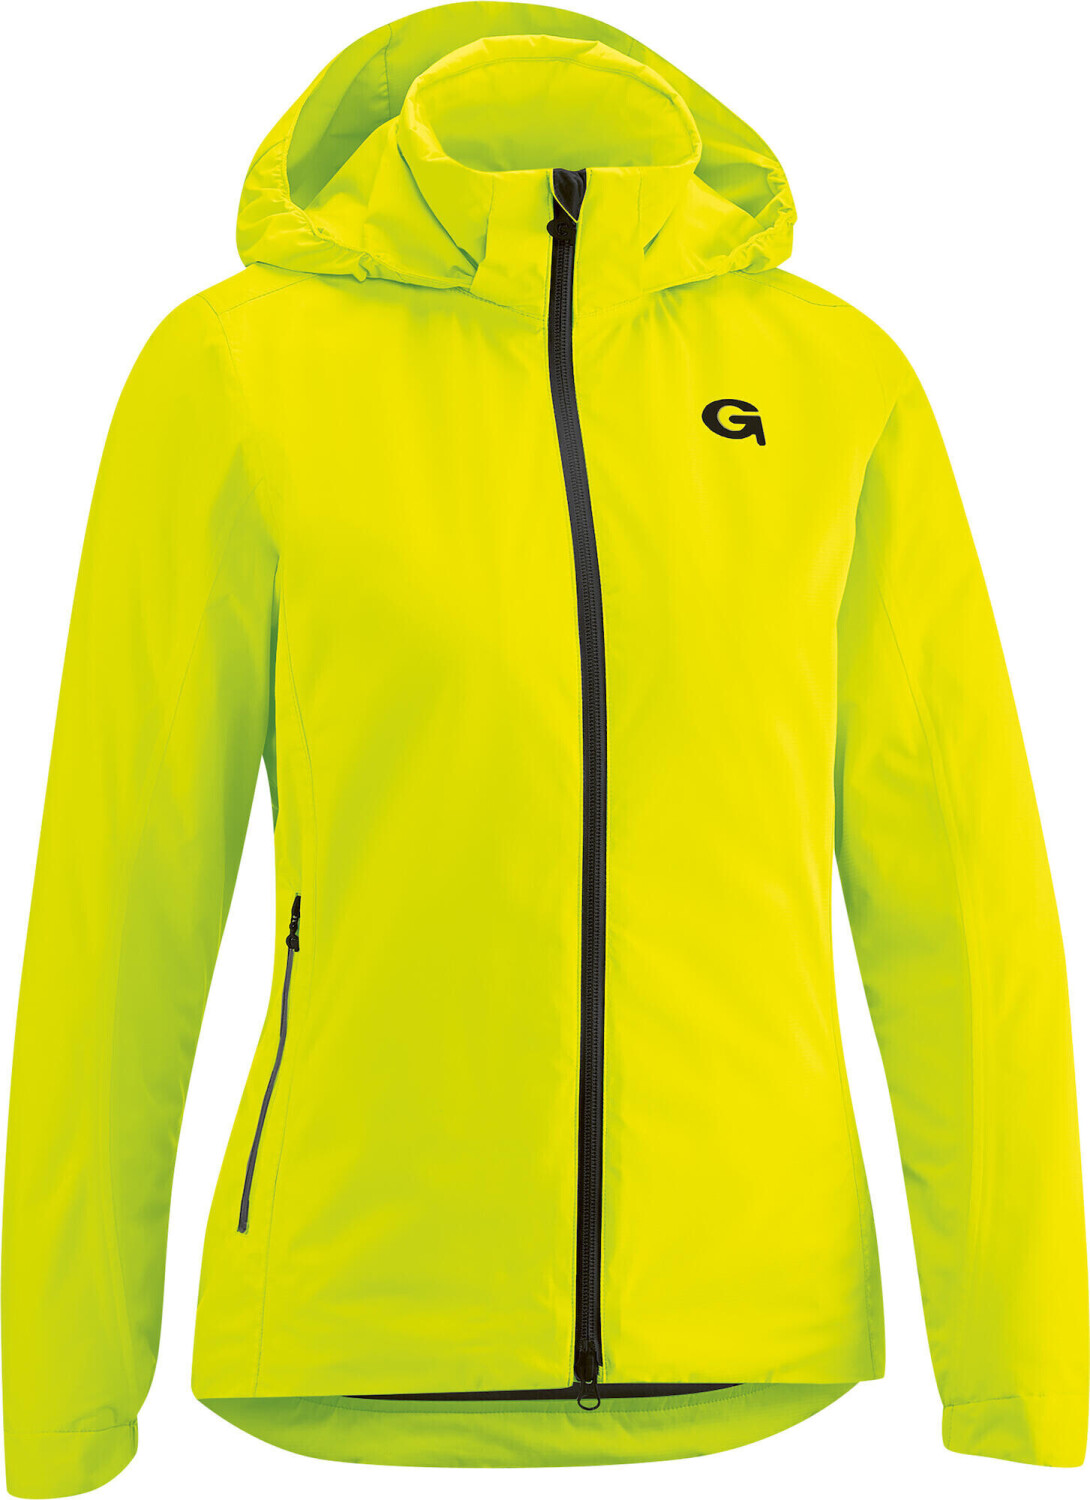 Gonso Sura Therm Jacket Women yellow 143,45 safety ab bei € Preisvergleich 